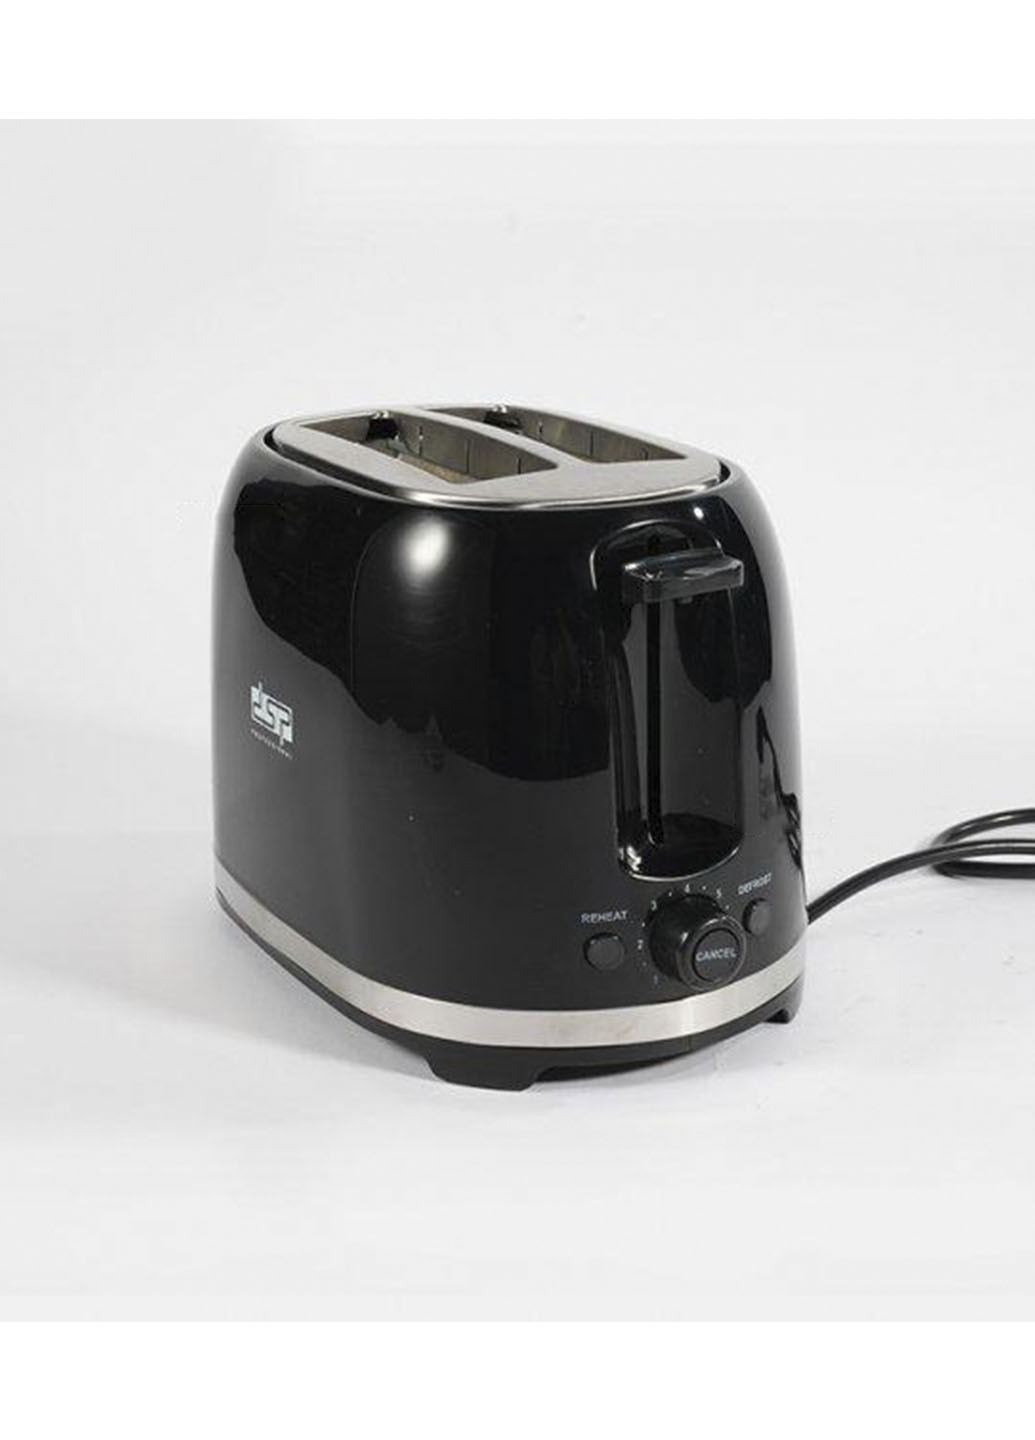 Тостер, электрический горизонтальный автоматический для хлеба 850W на 2 тоста DSP чёрный